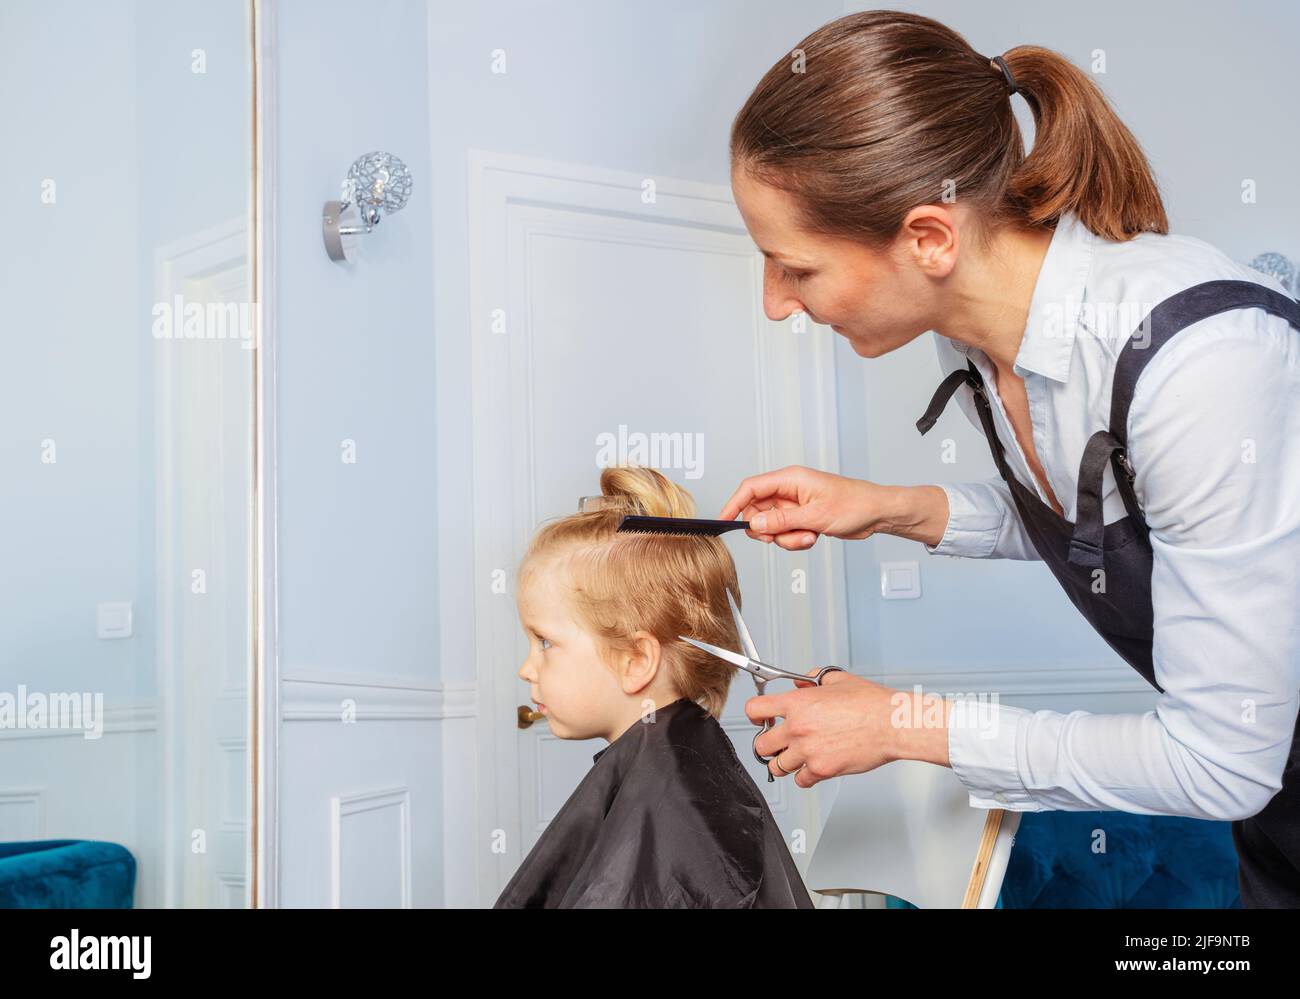 Junge erhalten Frisur bei einem professionellen Friseursalon Stockfoto